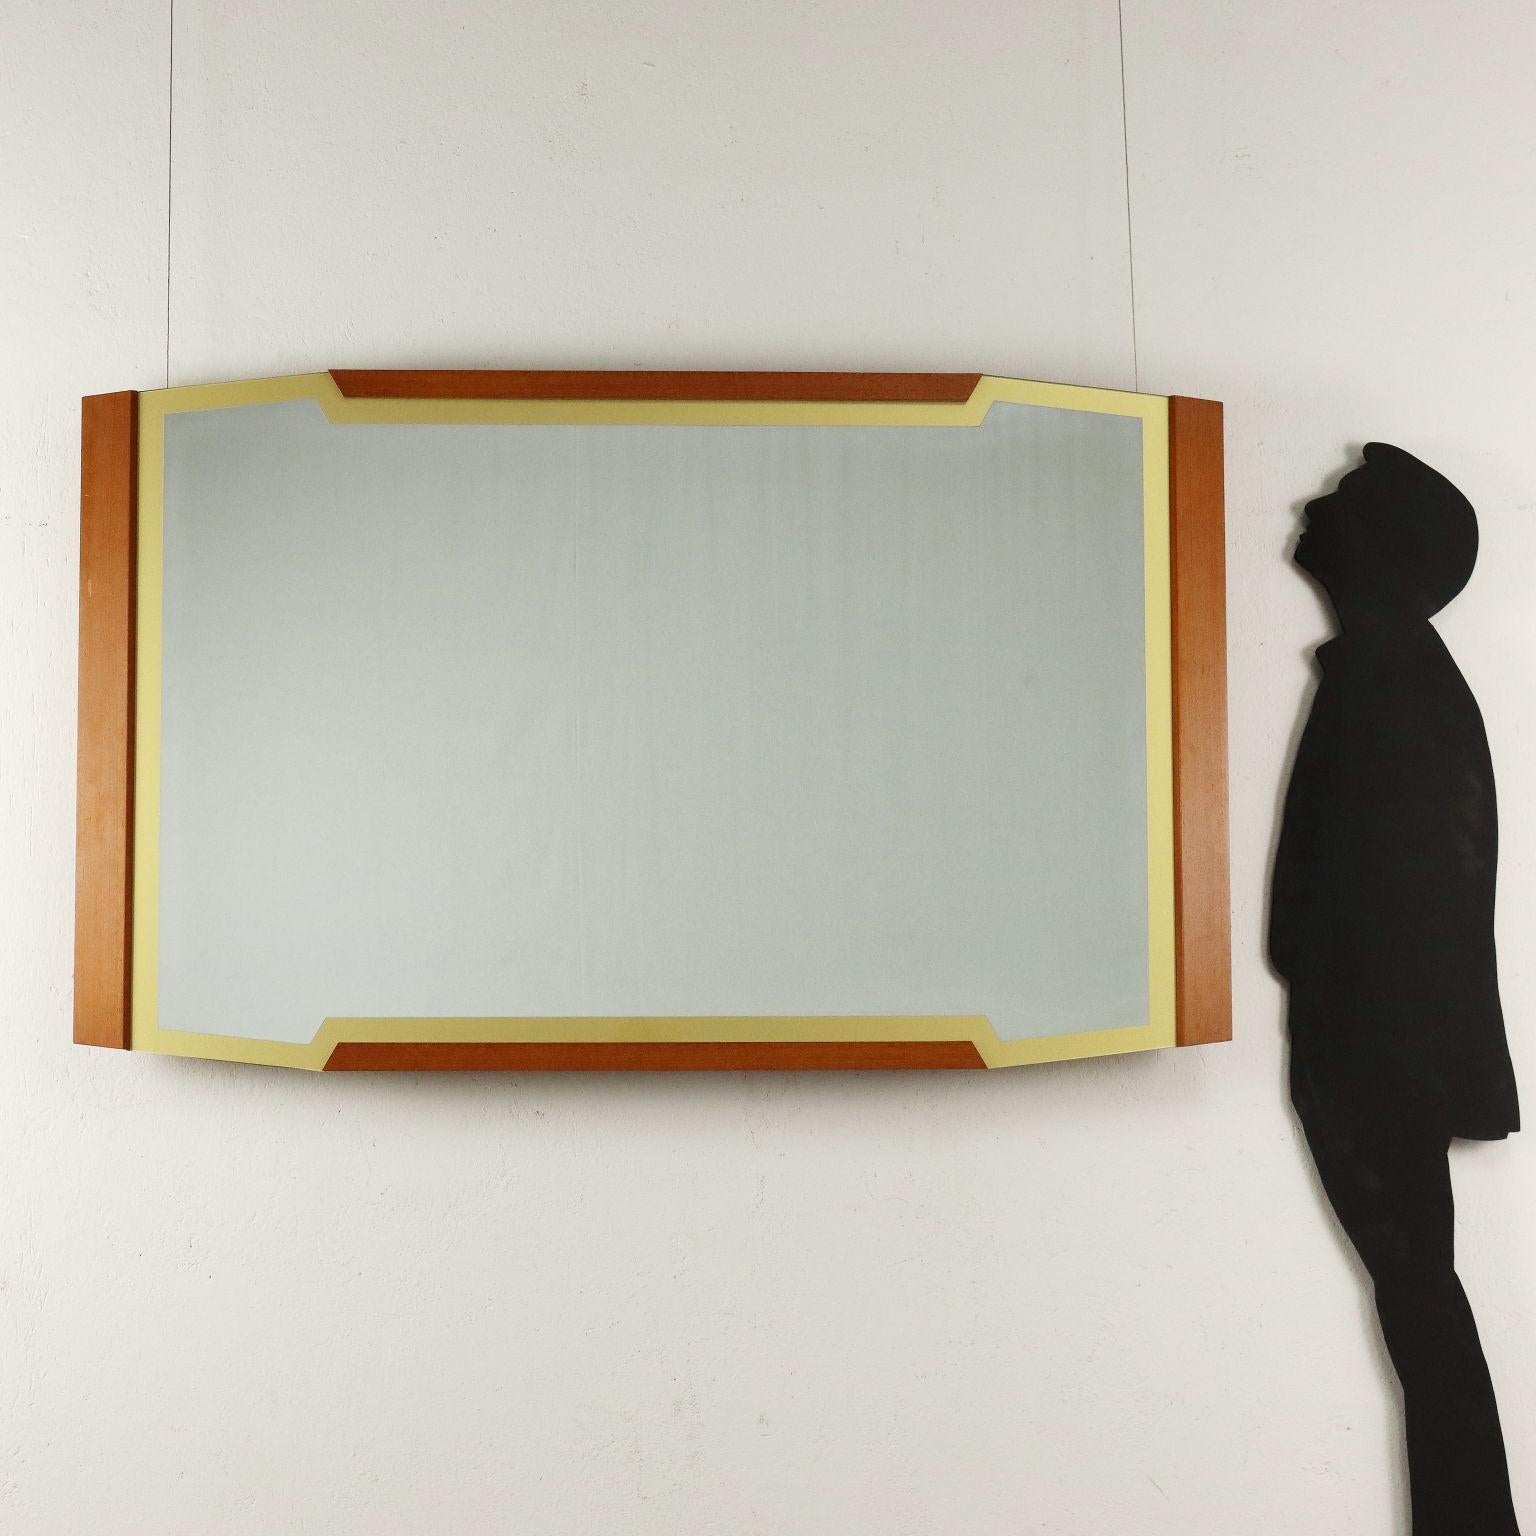 Wandspiegel mit Teakholzrahmen und verspiegeltem Glas mit hintermaltem Konturenband.